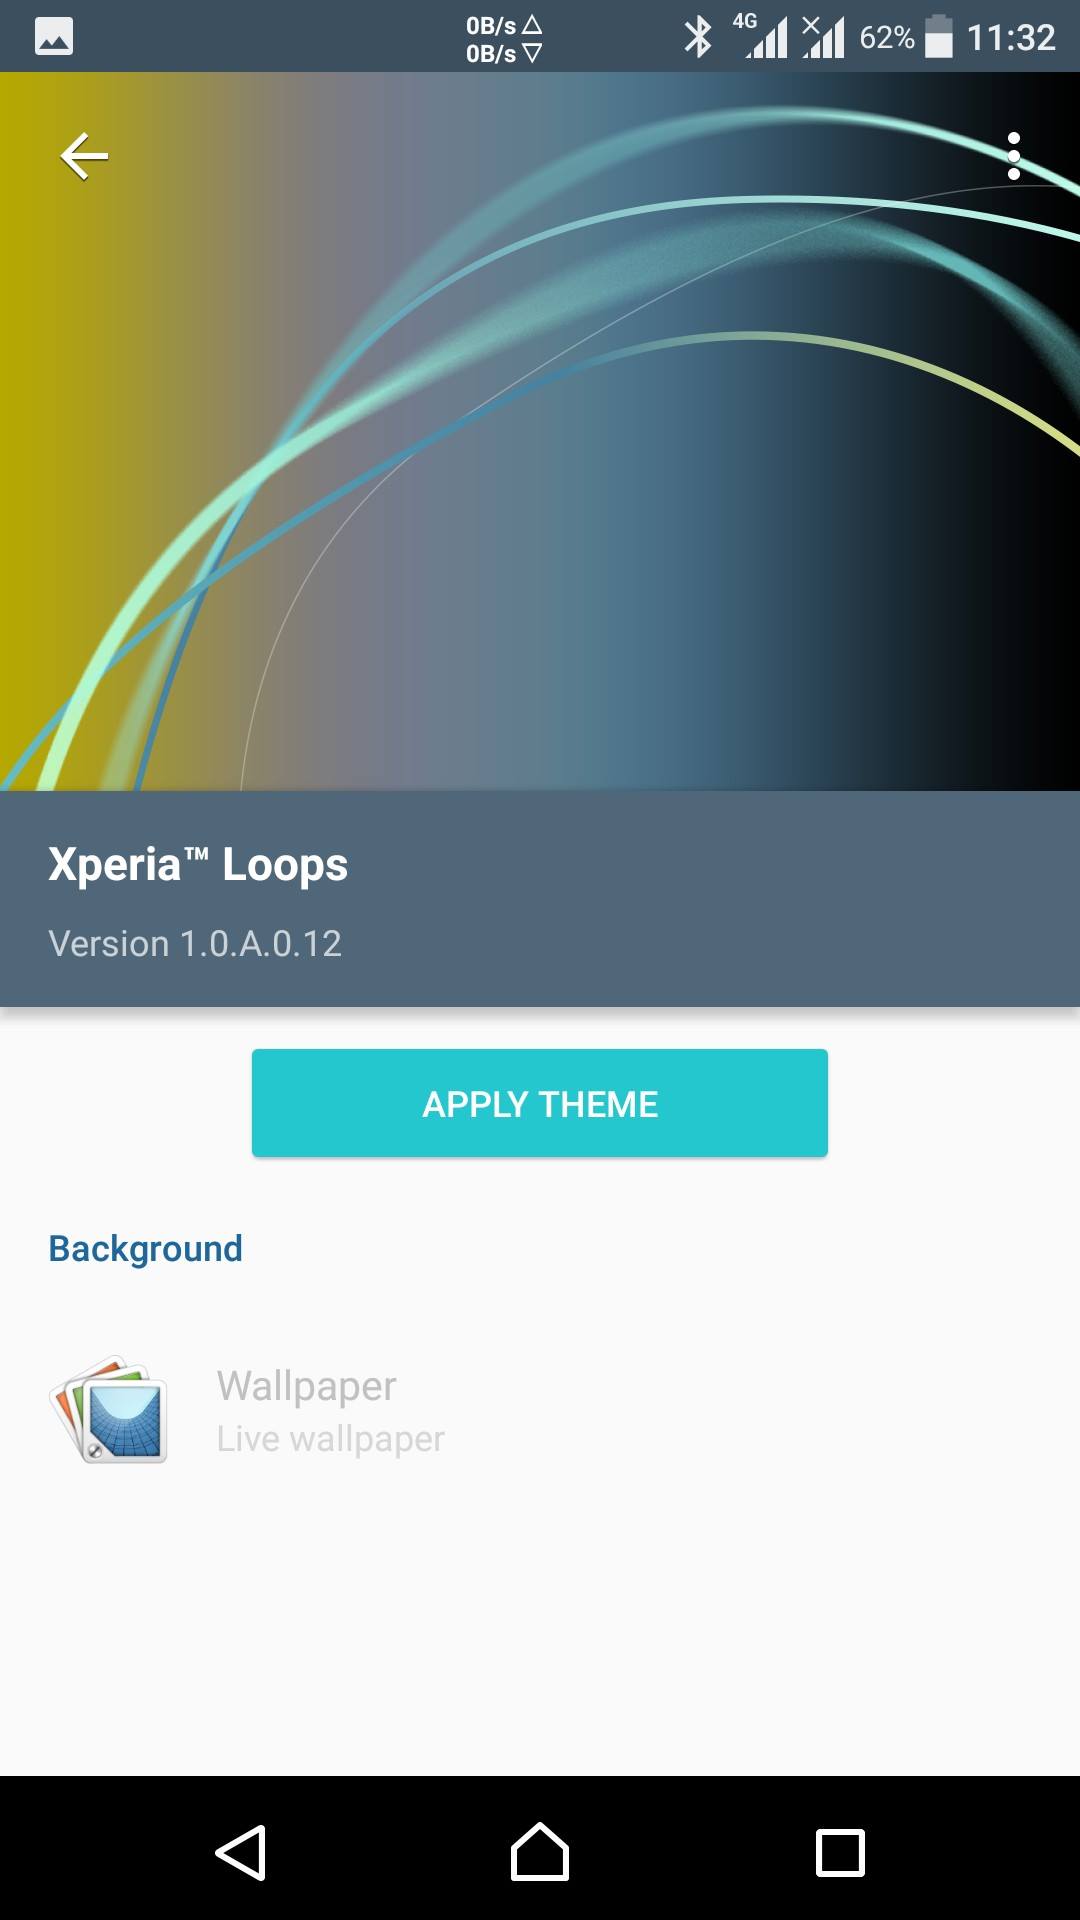 Xperia Loops Theme Version 10A012 Apk Gizmo Bolt Exposing